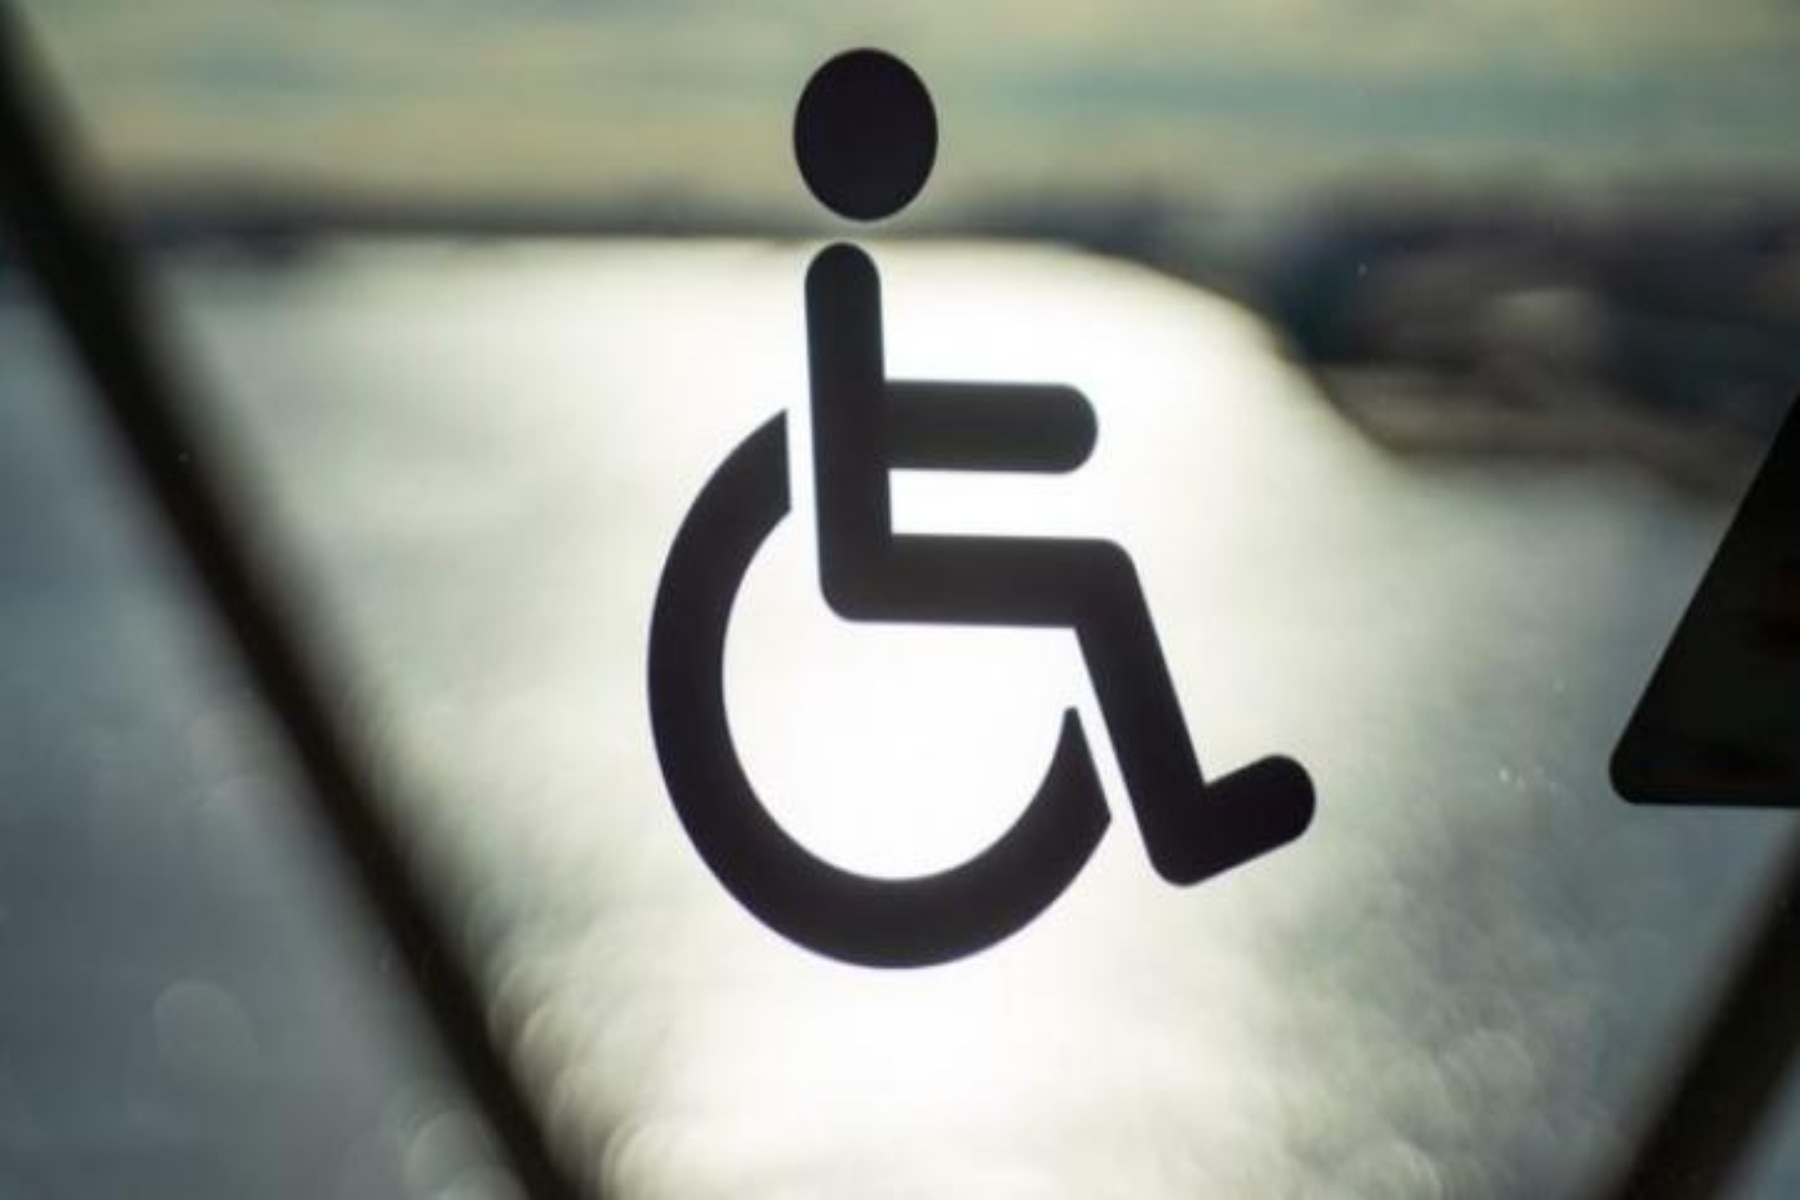 ΑΓΗΣΙΛΑΟΣ: Η συνεισφορά του πολιτισμού στην κοινωνική ένταξη των ατόμων με αναπηρία και χρόνιες παθήσεις